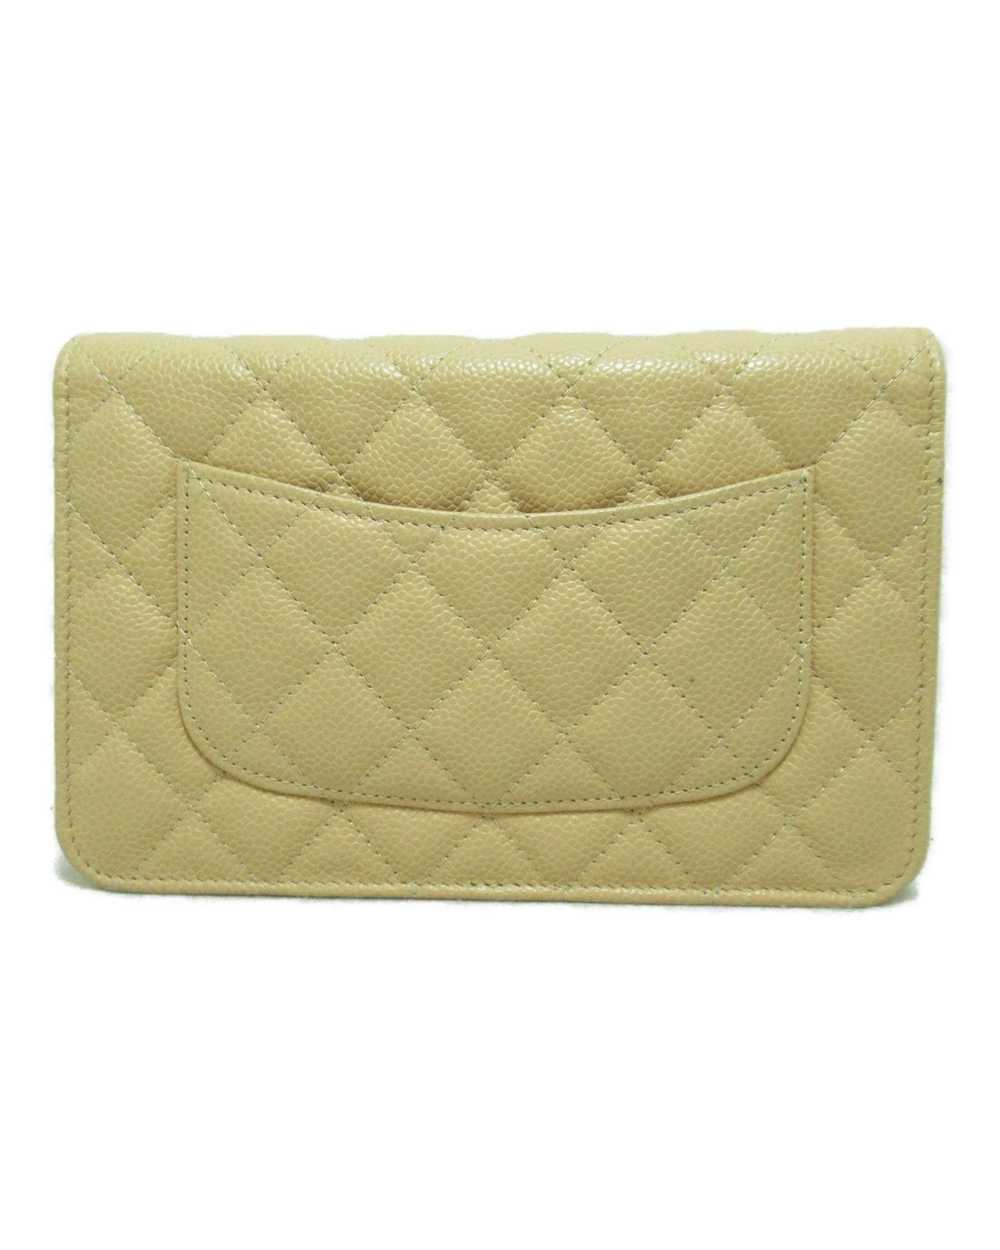 Chanel Beige Leather Shoulder Bag - image 3